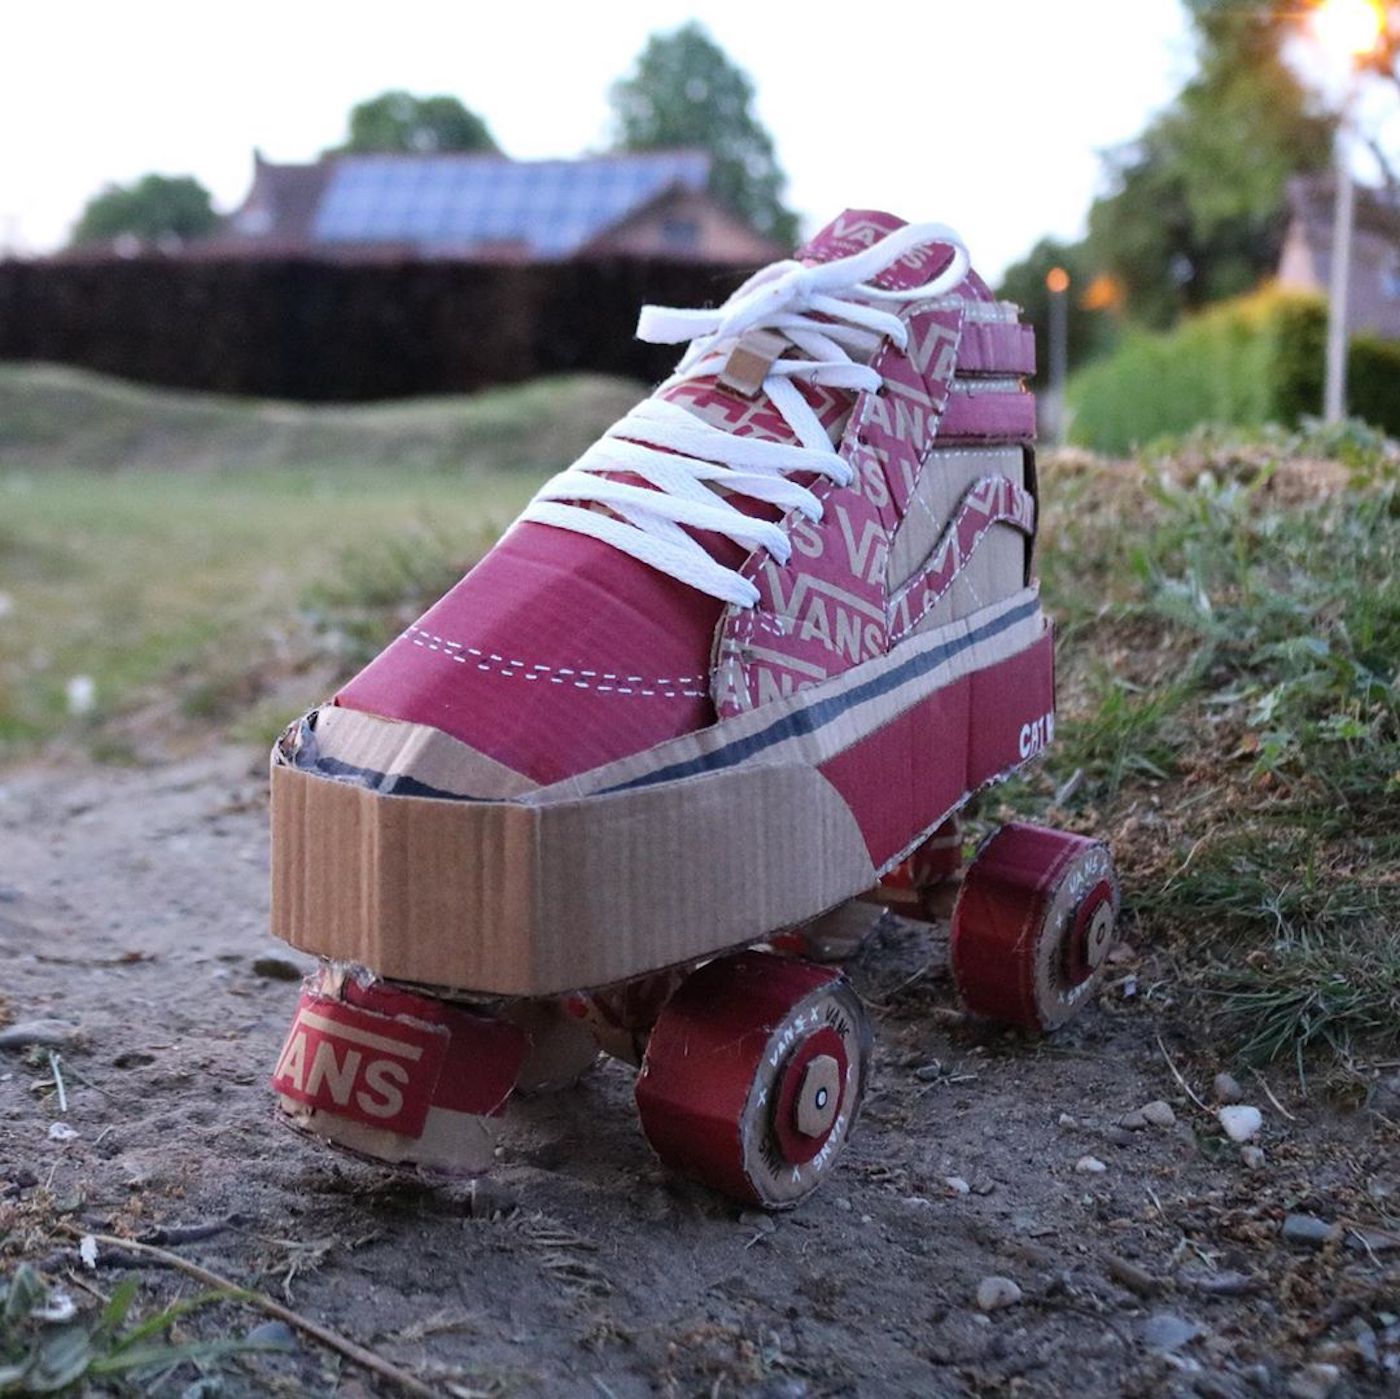 Vans motive ses clients à recycler ses boîtes de chaussures avec créativité